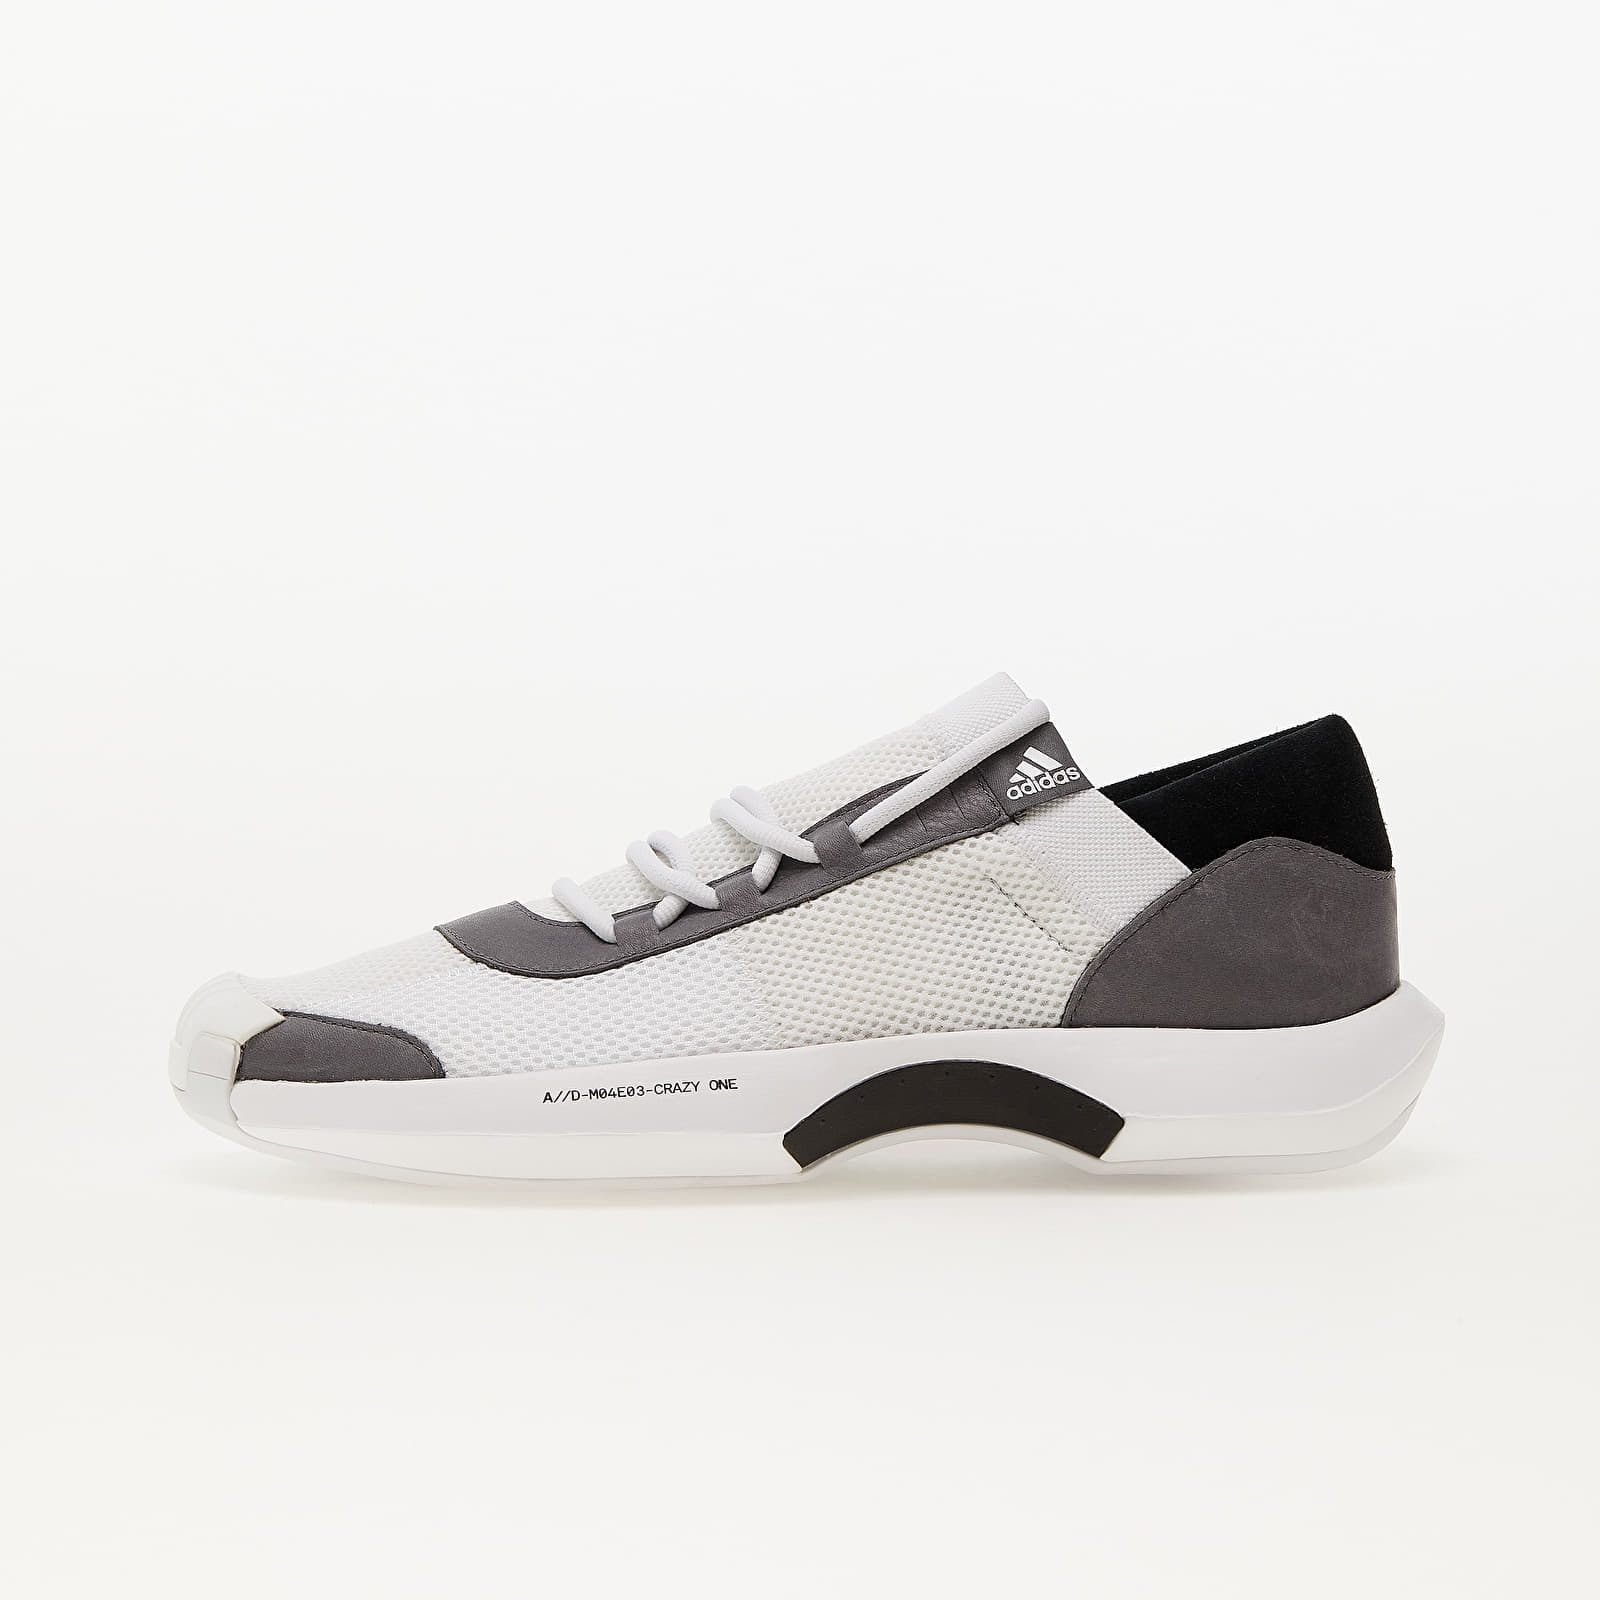 Herren Sneaker und Schuhe adidas Consortium Crazy 1 A//D White/ Core Red/ Core Black